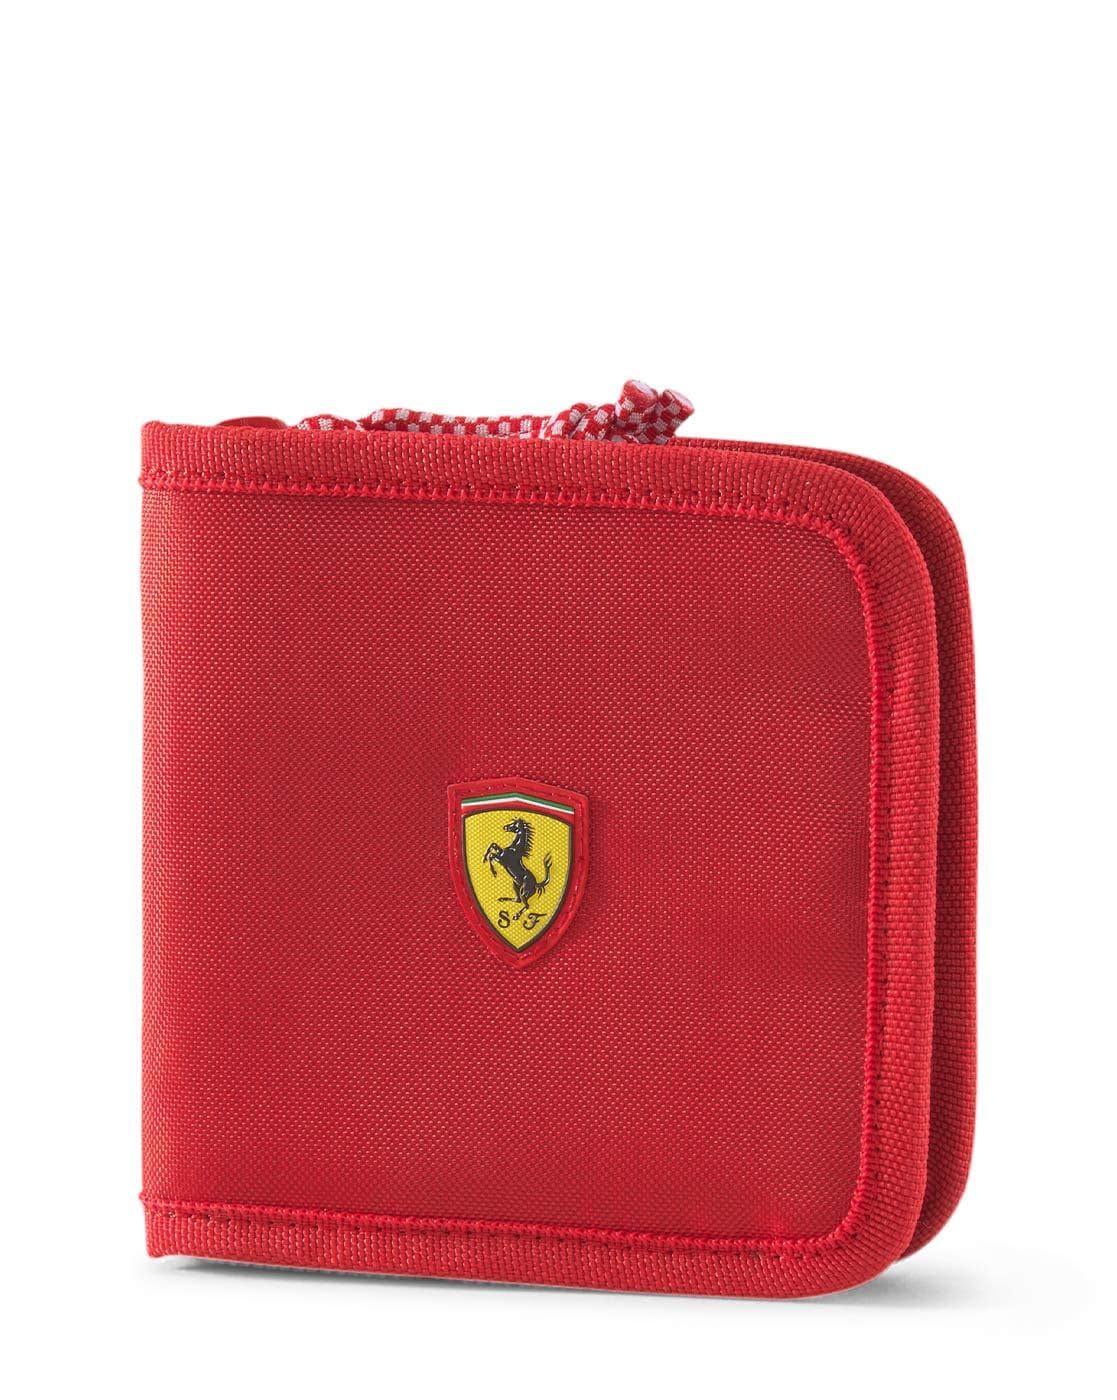 Shop Puma Ferrari Bag online | Lazada.com.my